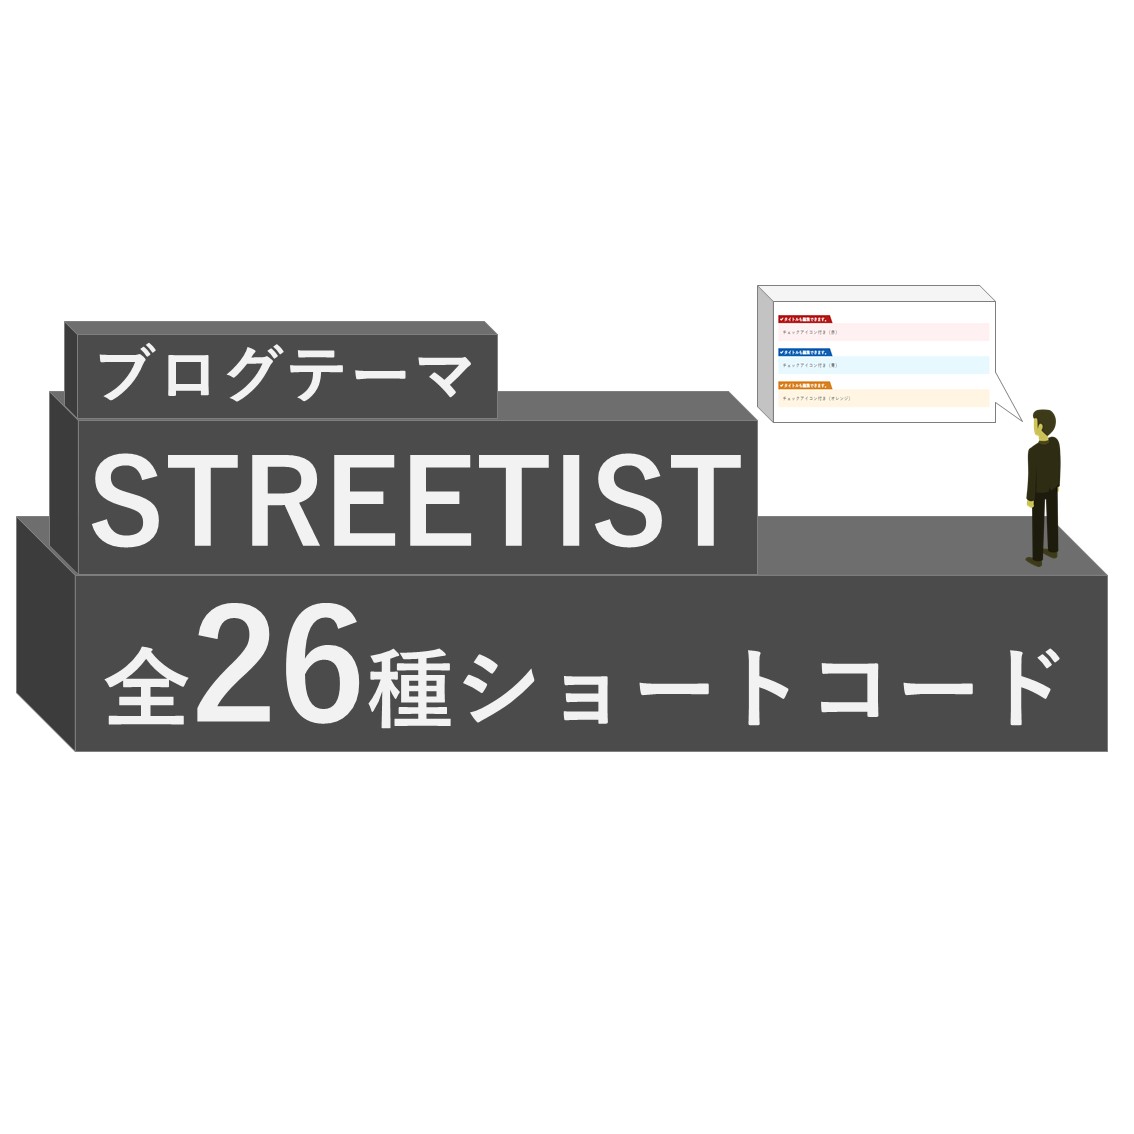 「【全26種類】STREETIST(WPテーマ)のショートコードボックスをすべて公開」のアイキャッチ画像